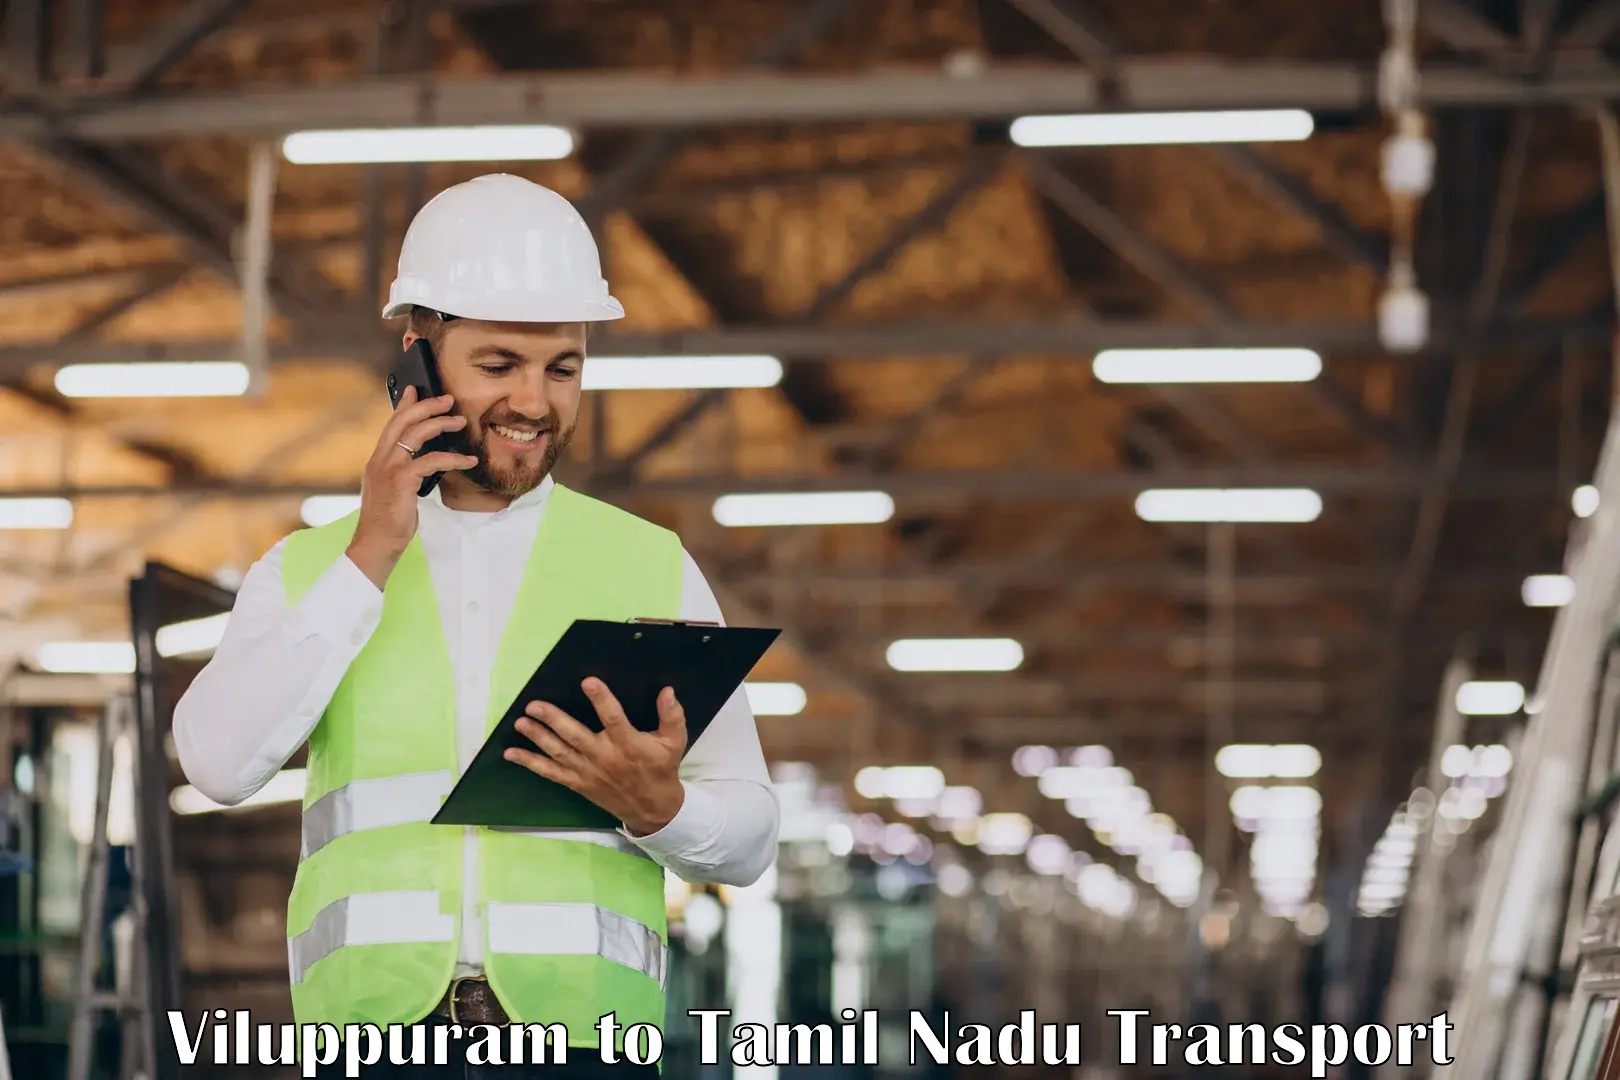 Logistics transportation services Viluppuram to Villupuram